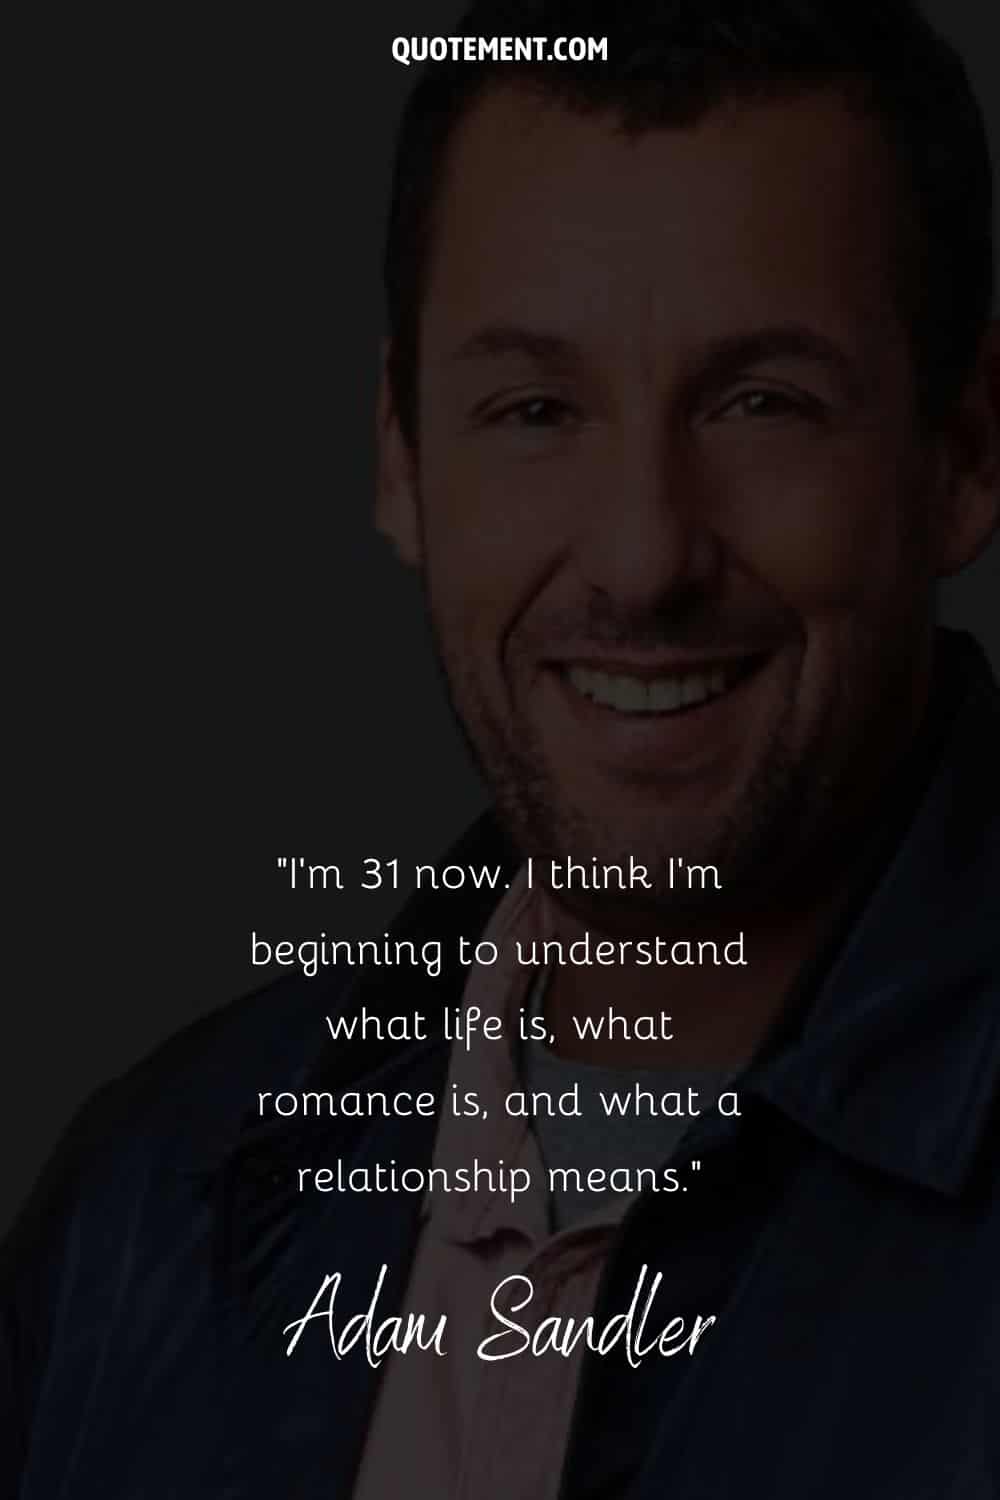 Adam Sandler relationship quote